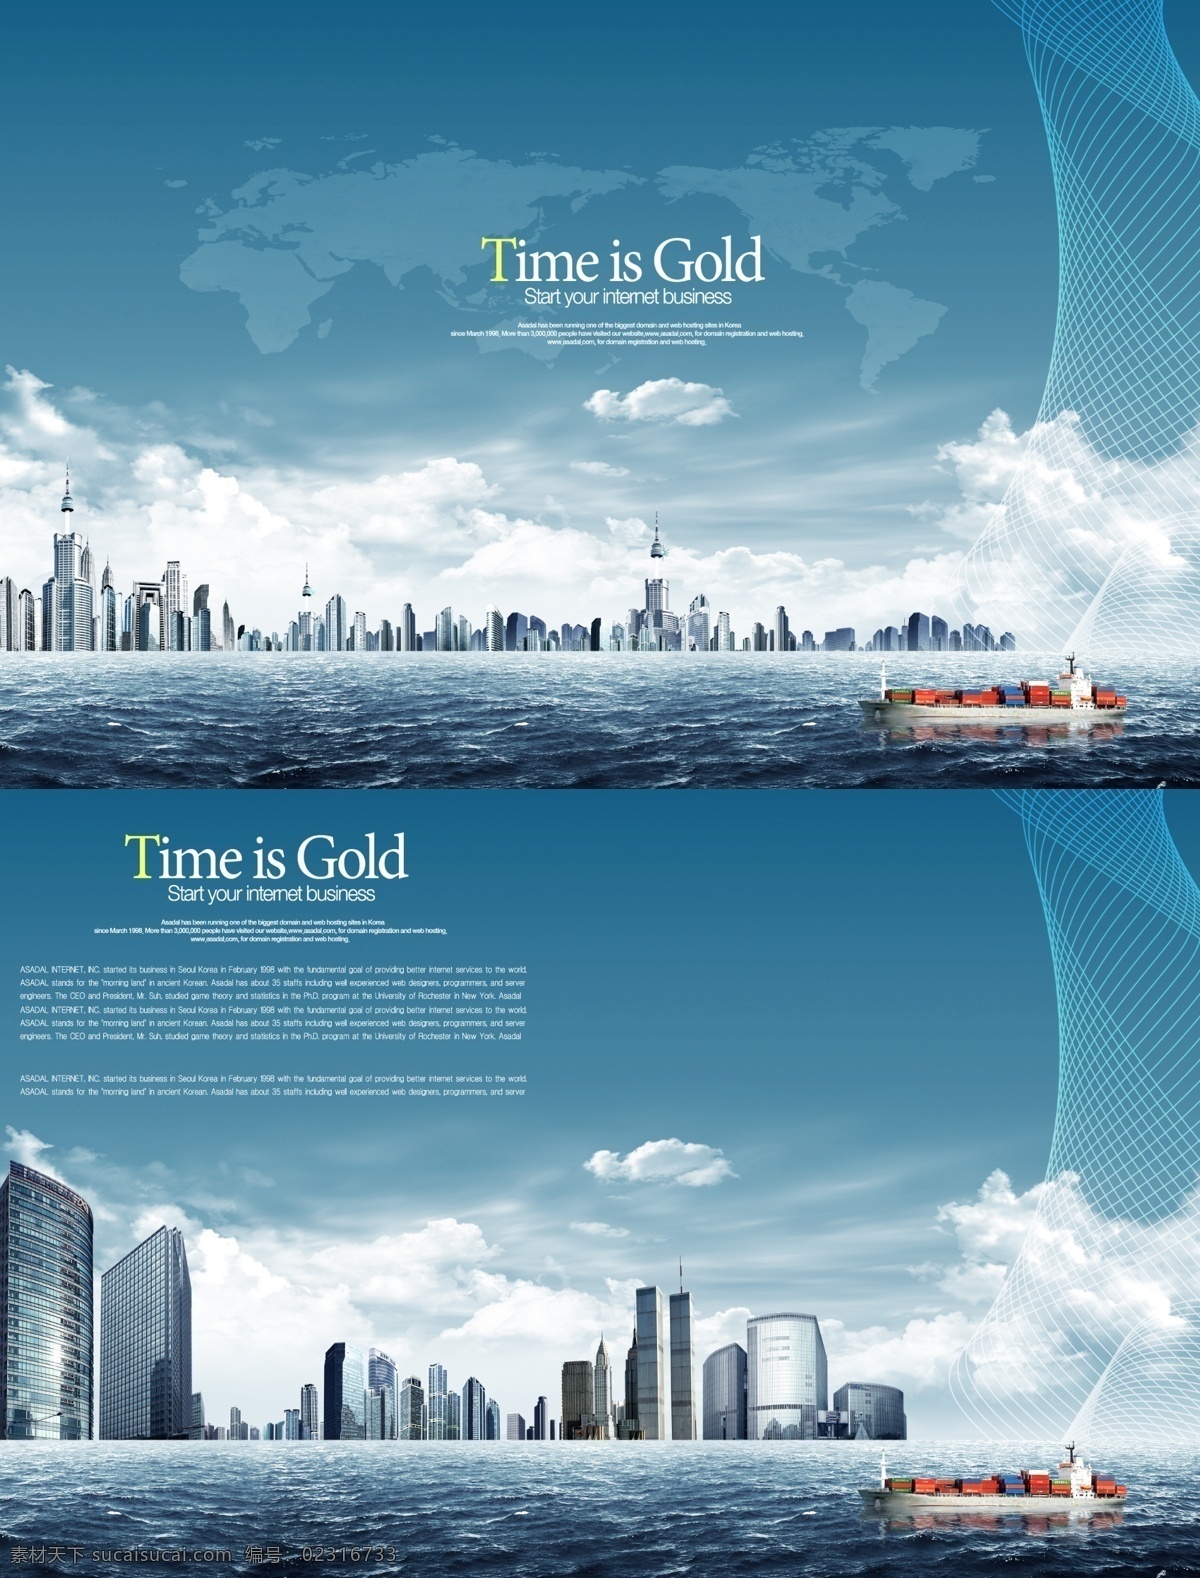 未来 城市 背景 图 背景图 地球 科技 蓝色 商务背景 时尚 天空 云朵 psd源文件